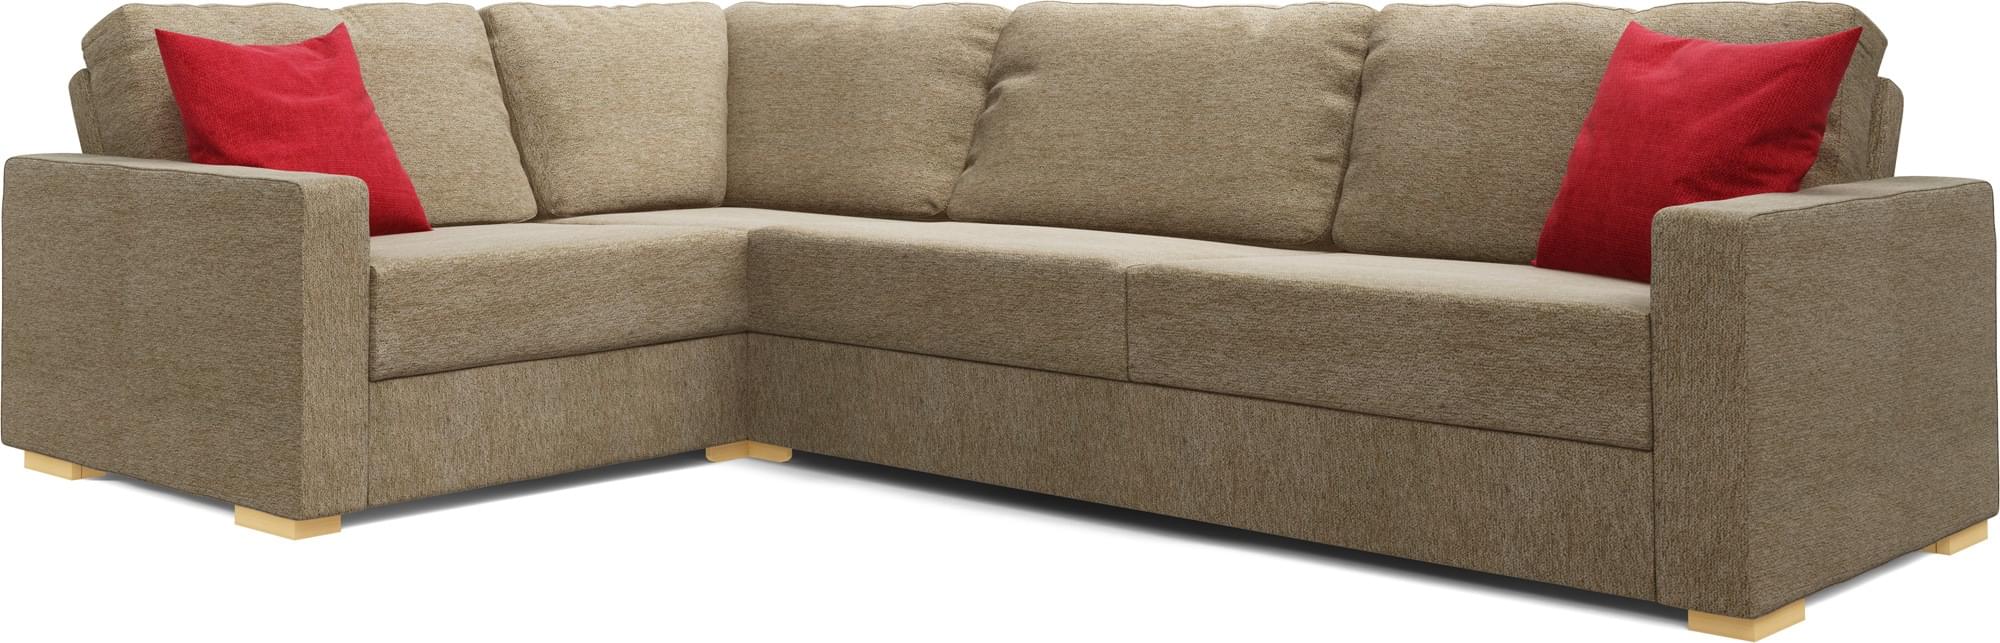 Koi 3X2 Corner Double Sofa Bed